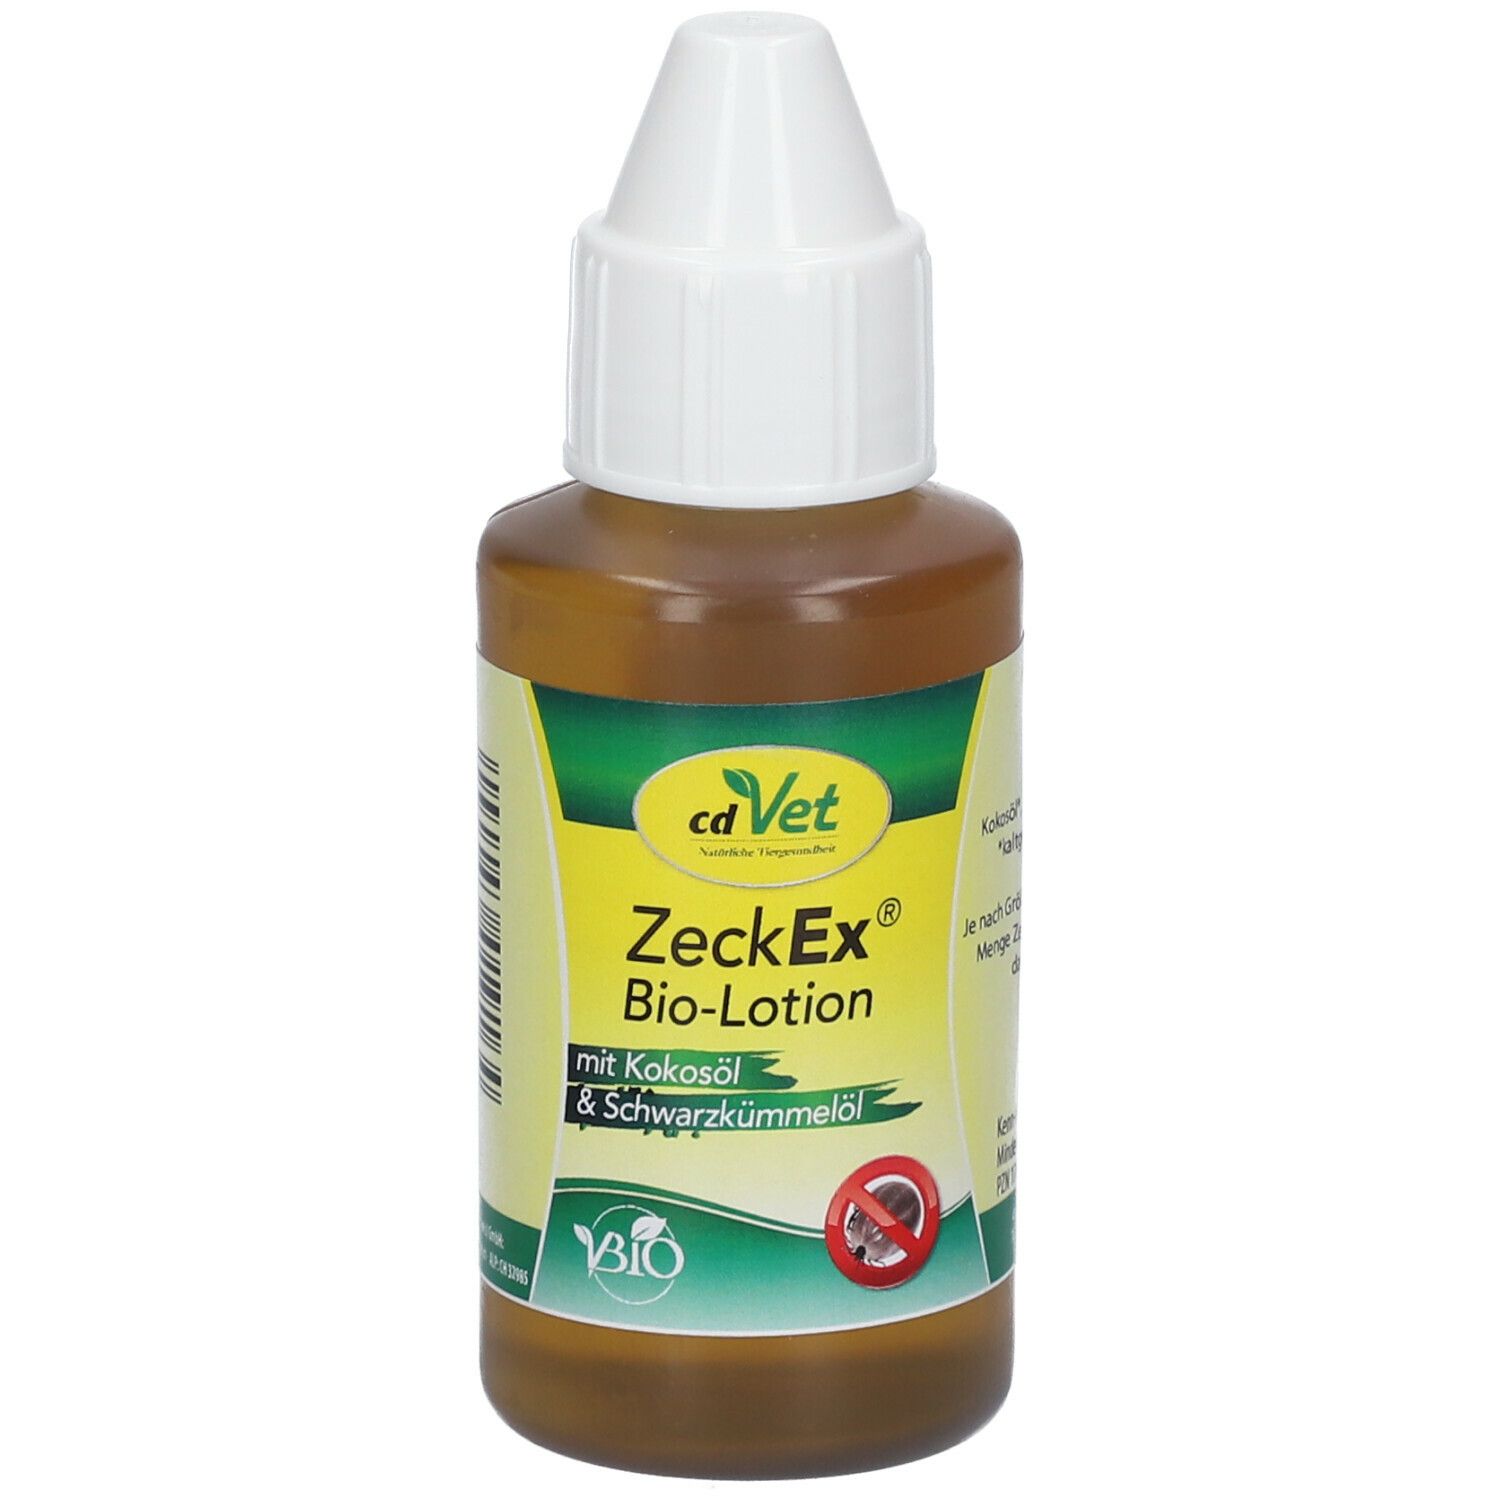 cdVet ZeckEx® Bio-Lotion